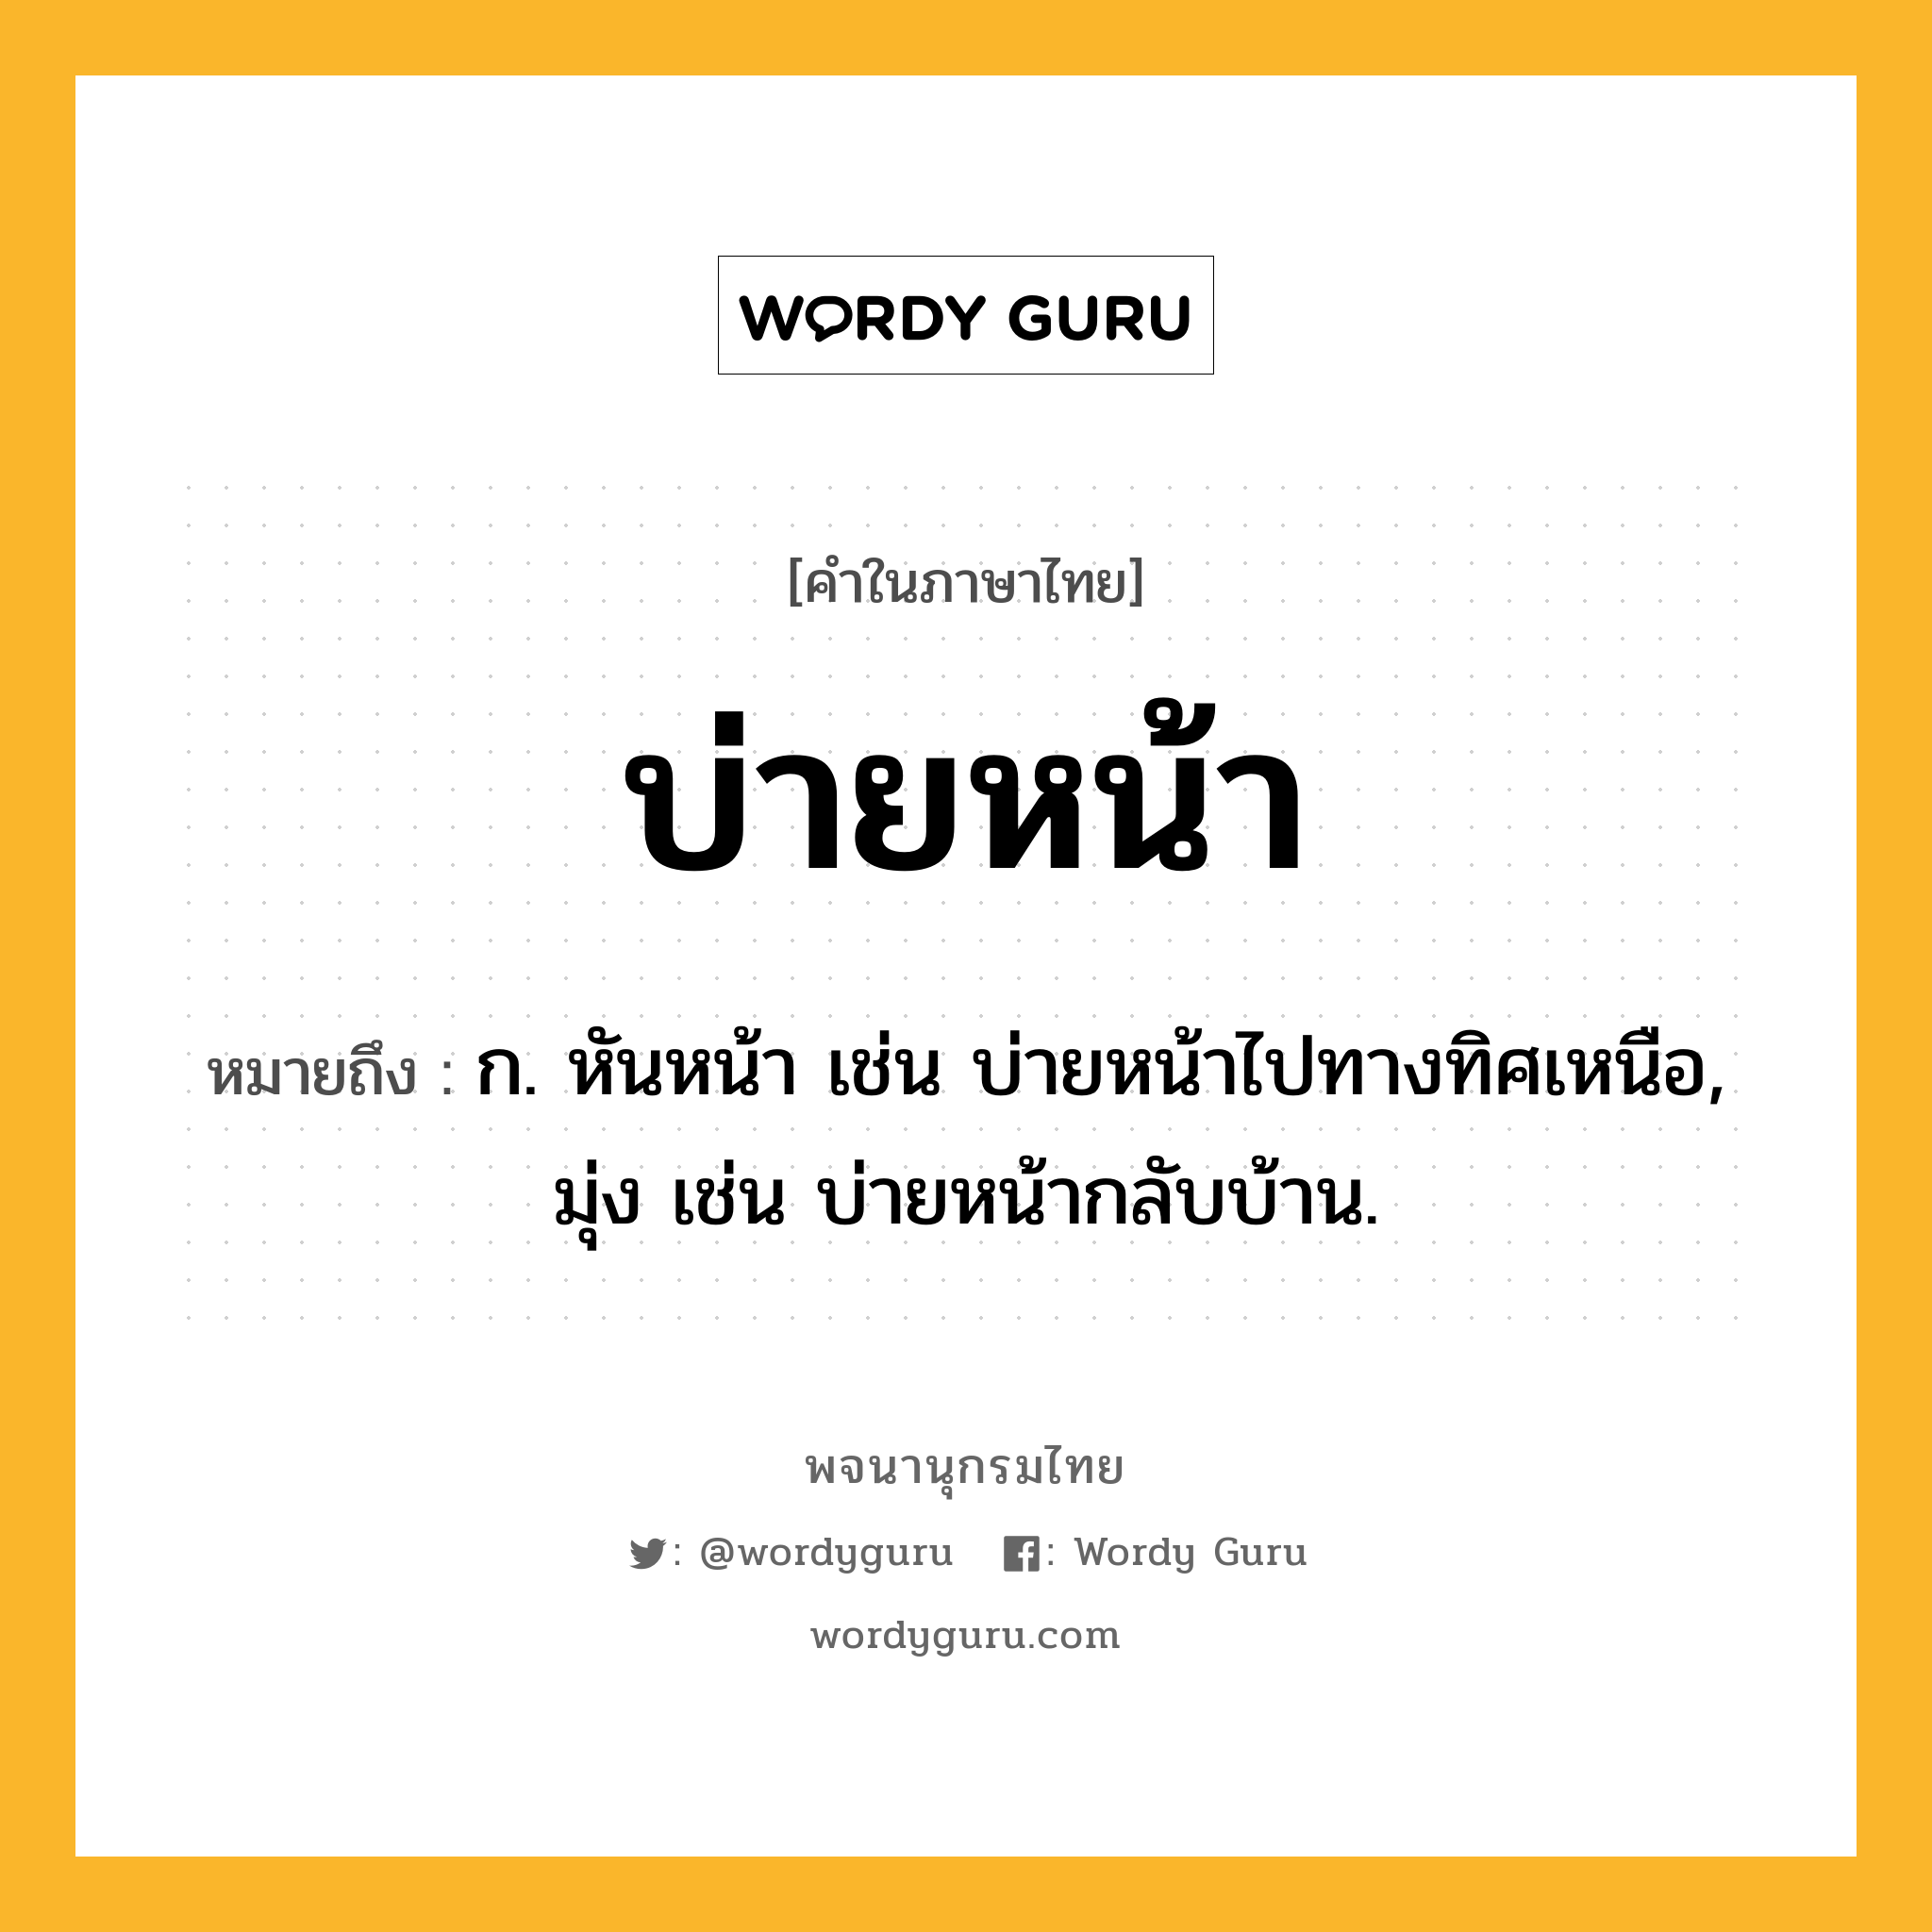 บ่ายหน้า ความหมาย หมายถึงอะไร?, คำในภาษาไทย บ่ายหน้า หมายถึง ก. หันหน้า เช่น บ่ายหน้าไปทางทิศเหนือ, มุ่ง เช่น บ่ายหน้ากลับบ้าน.